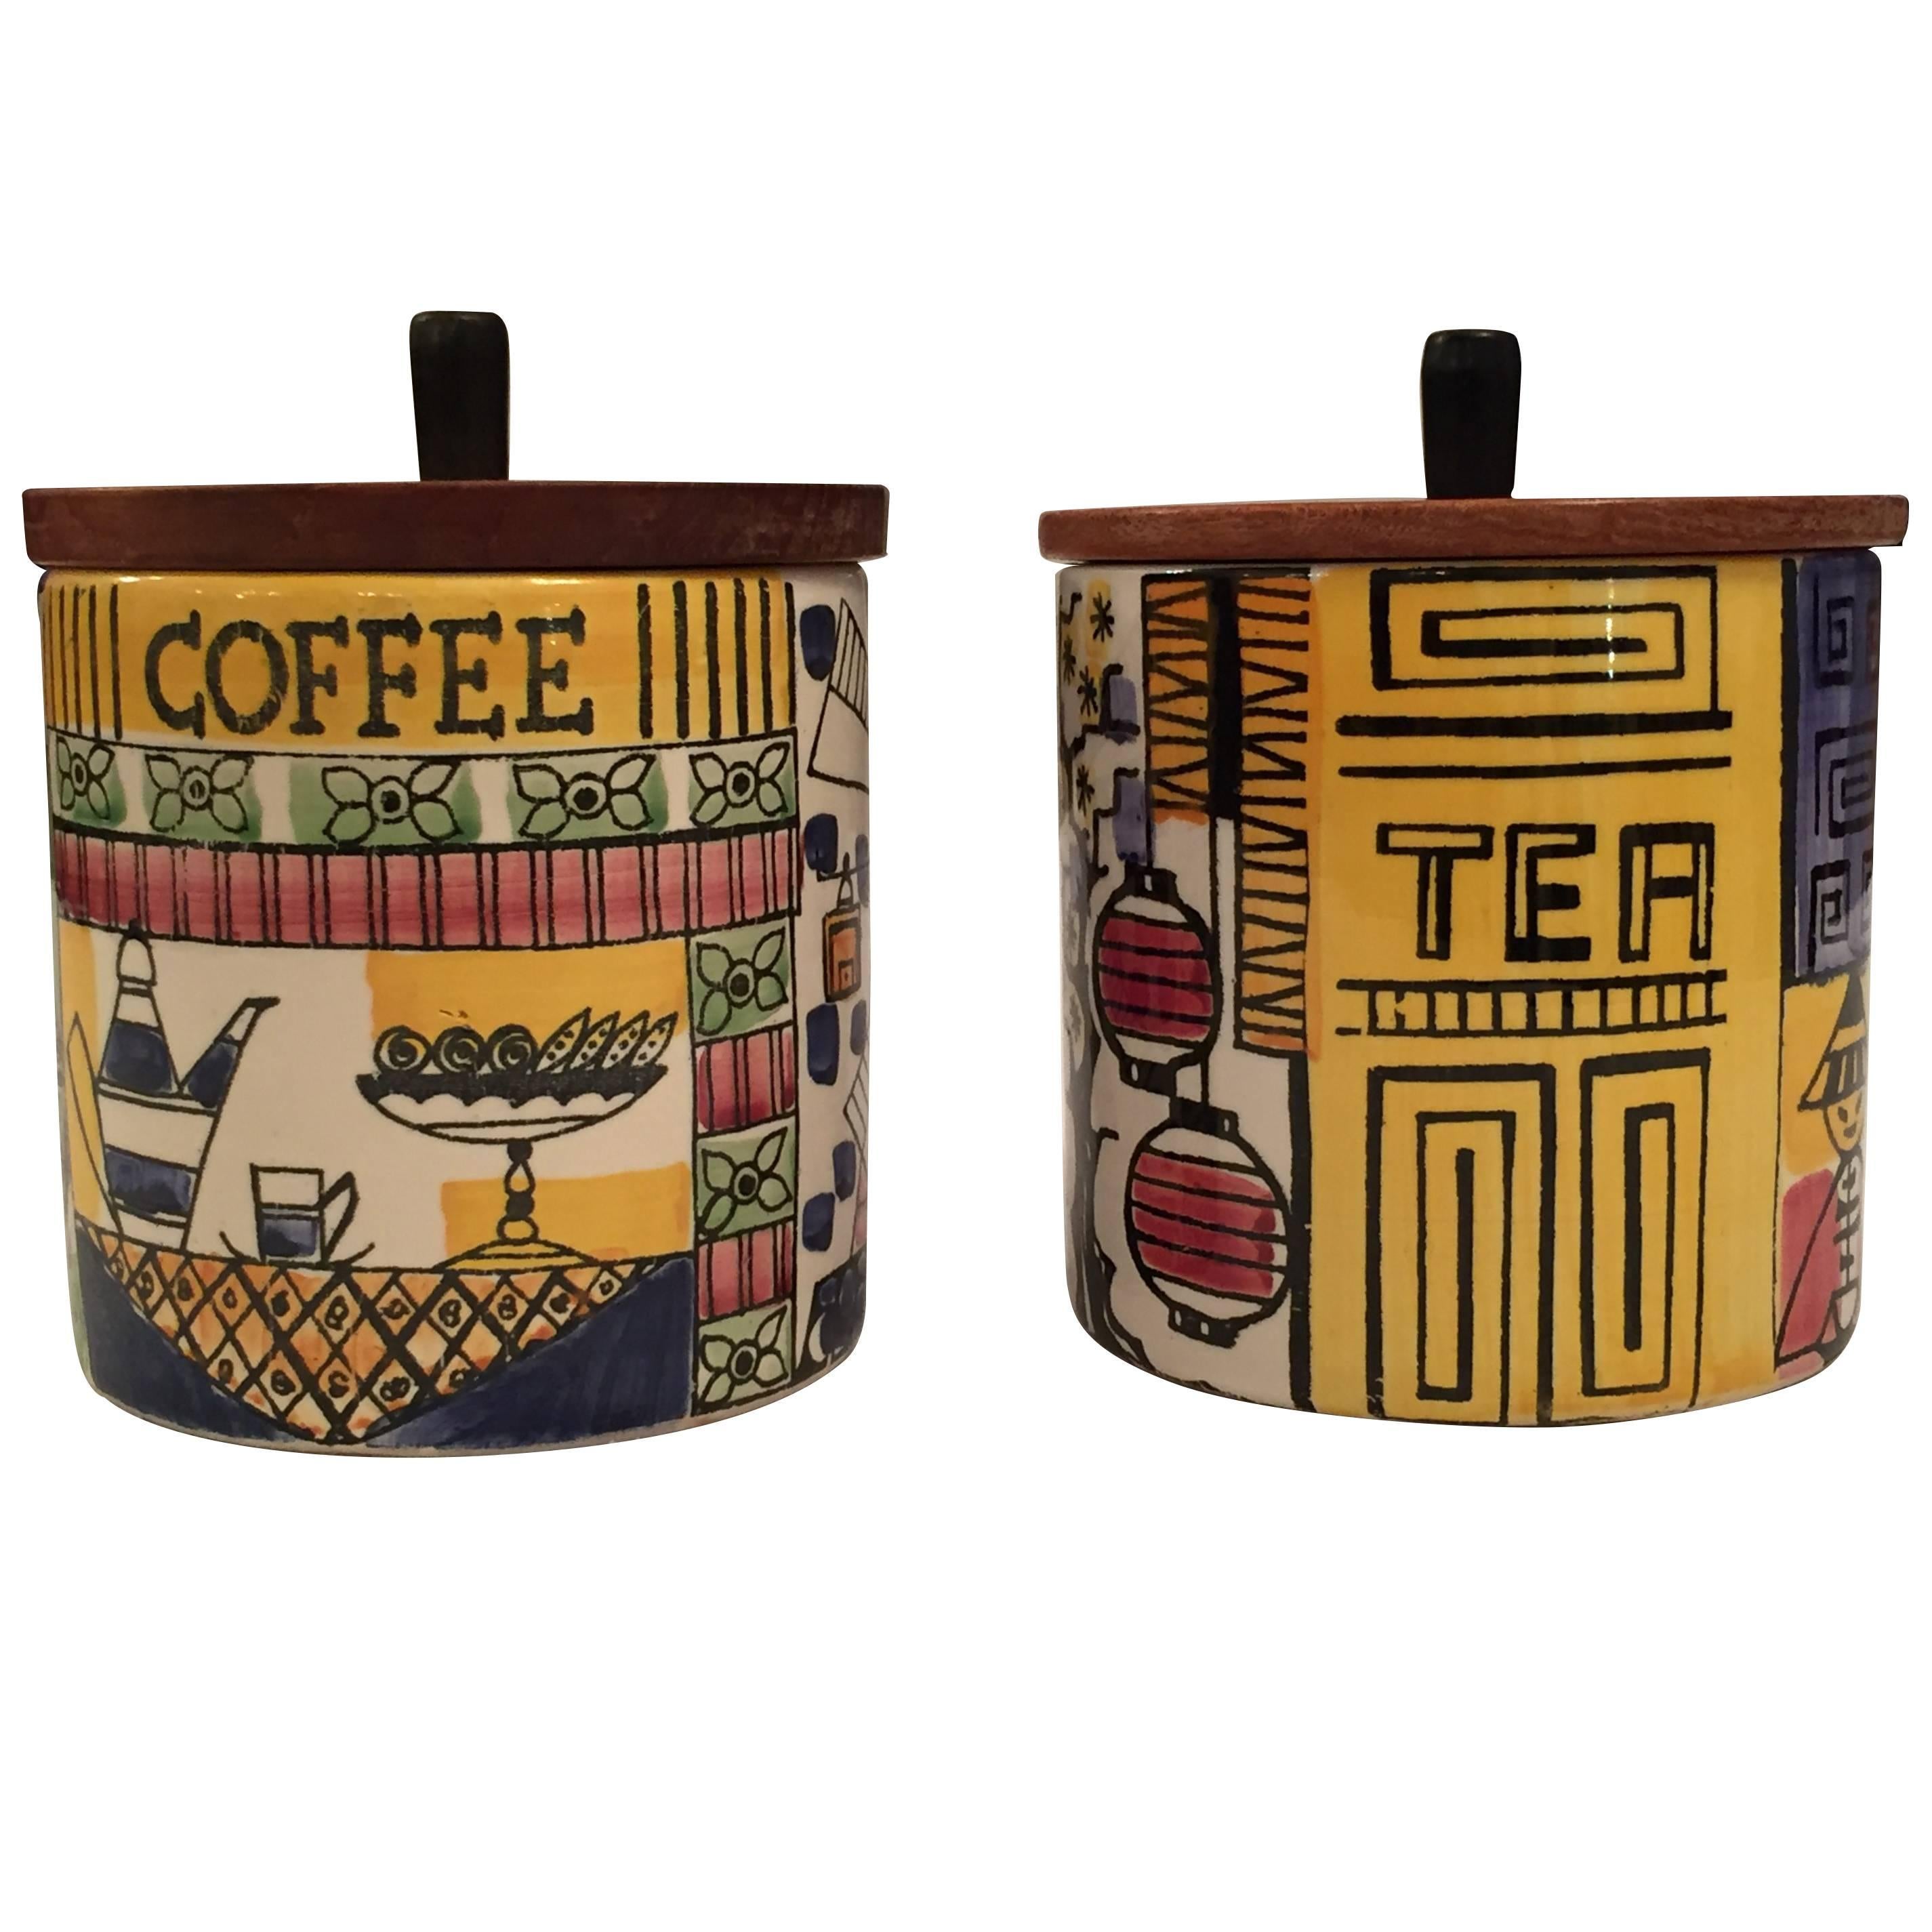 Anita Nylund Ceramic Coffee and Tea Jugs Jars with Teak Lid, Jie, Sweden For Sale